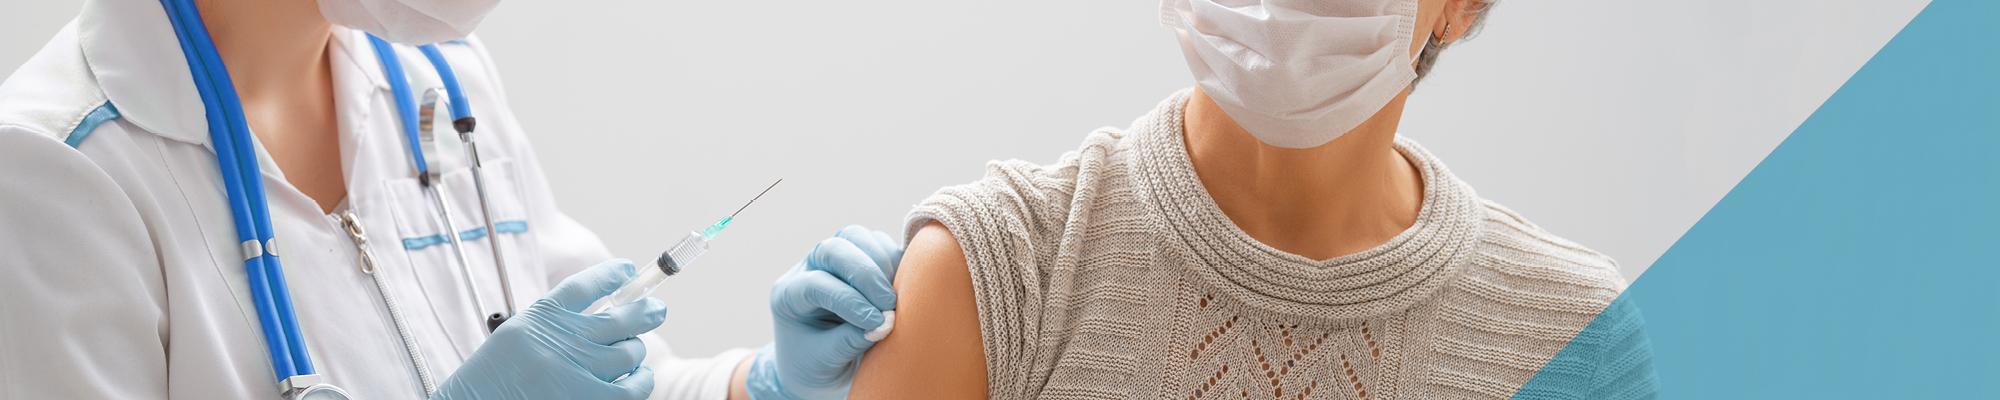 taking vaccine shot